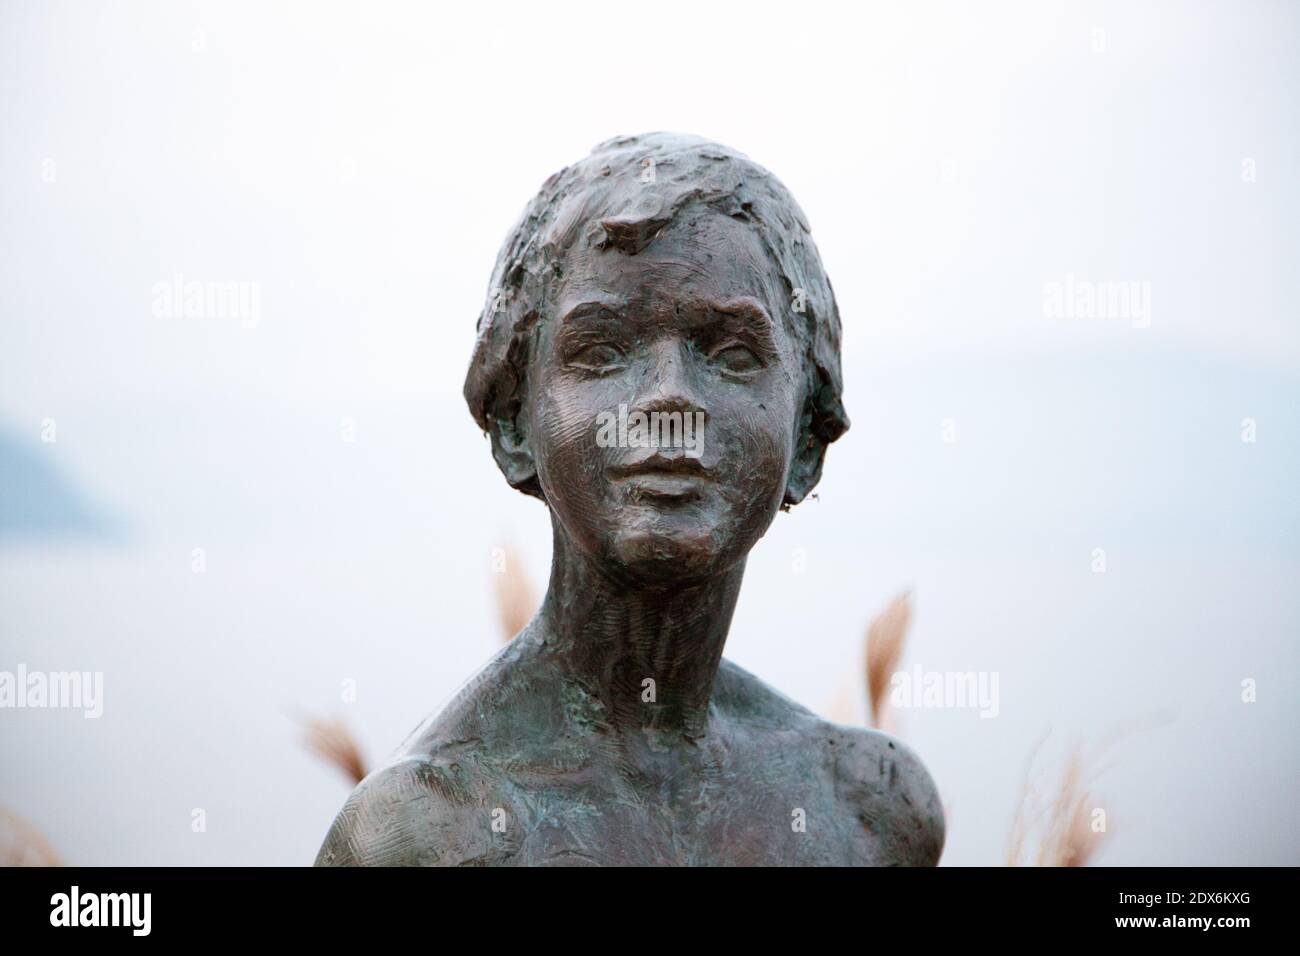 Sculpture de Friedhelm Zilly réalisée en 2011. Lac du Bourget. Savoie. France Stock Photo